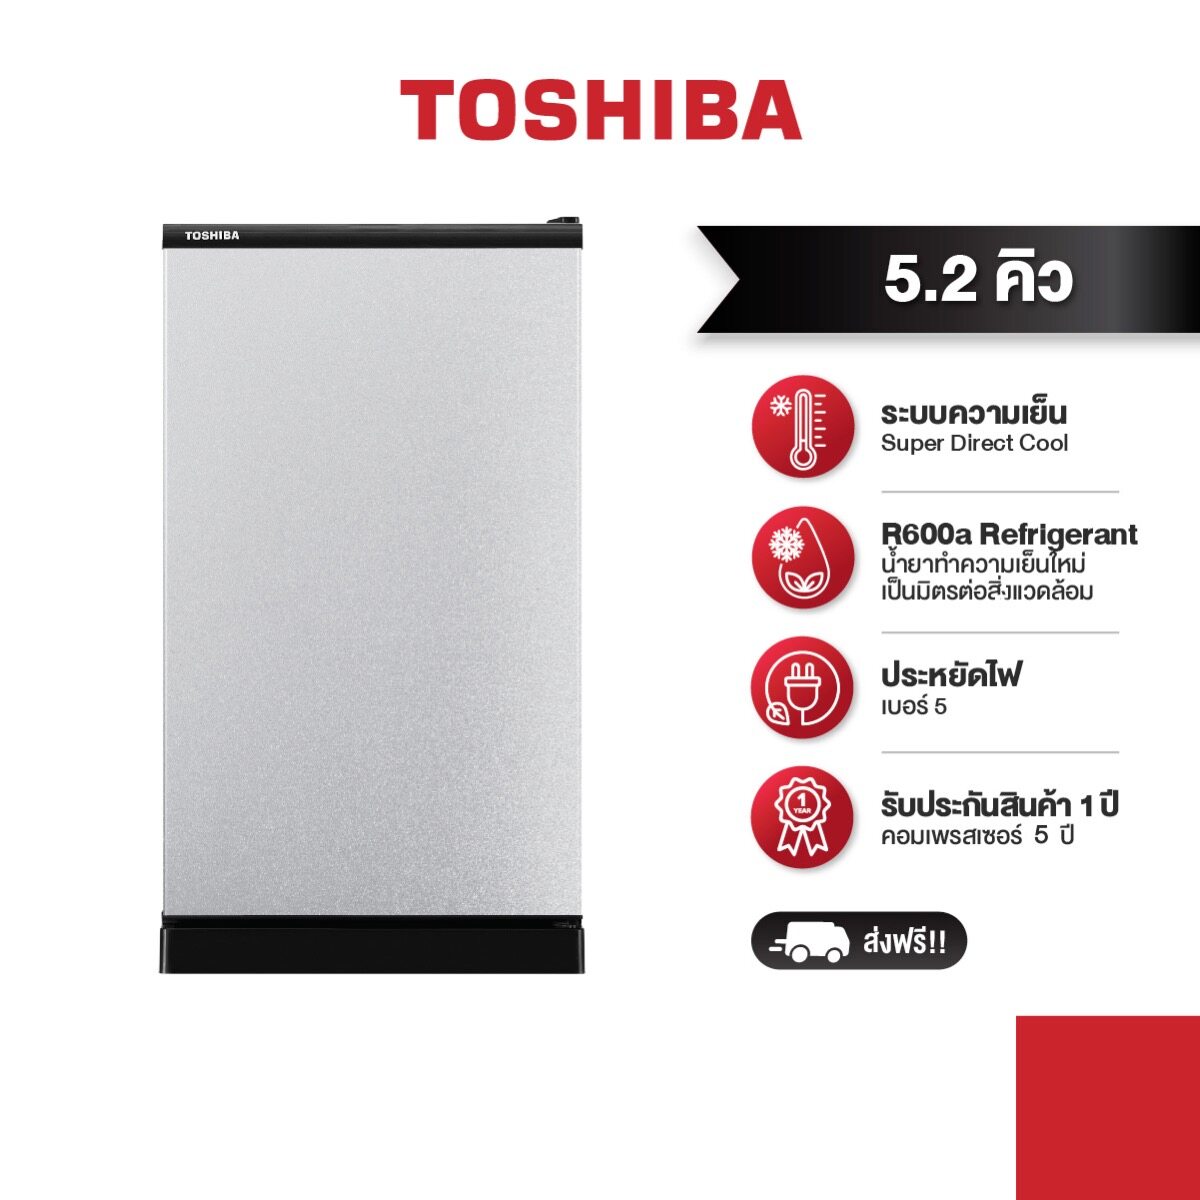 TOSHIBA ตู้เย็น 1 ประตู ความจุ 5.2 คิว GR-C149